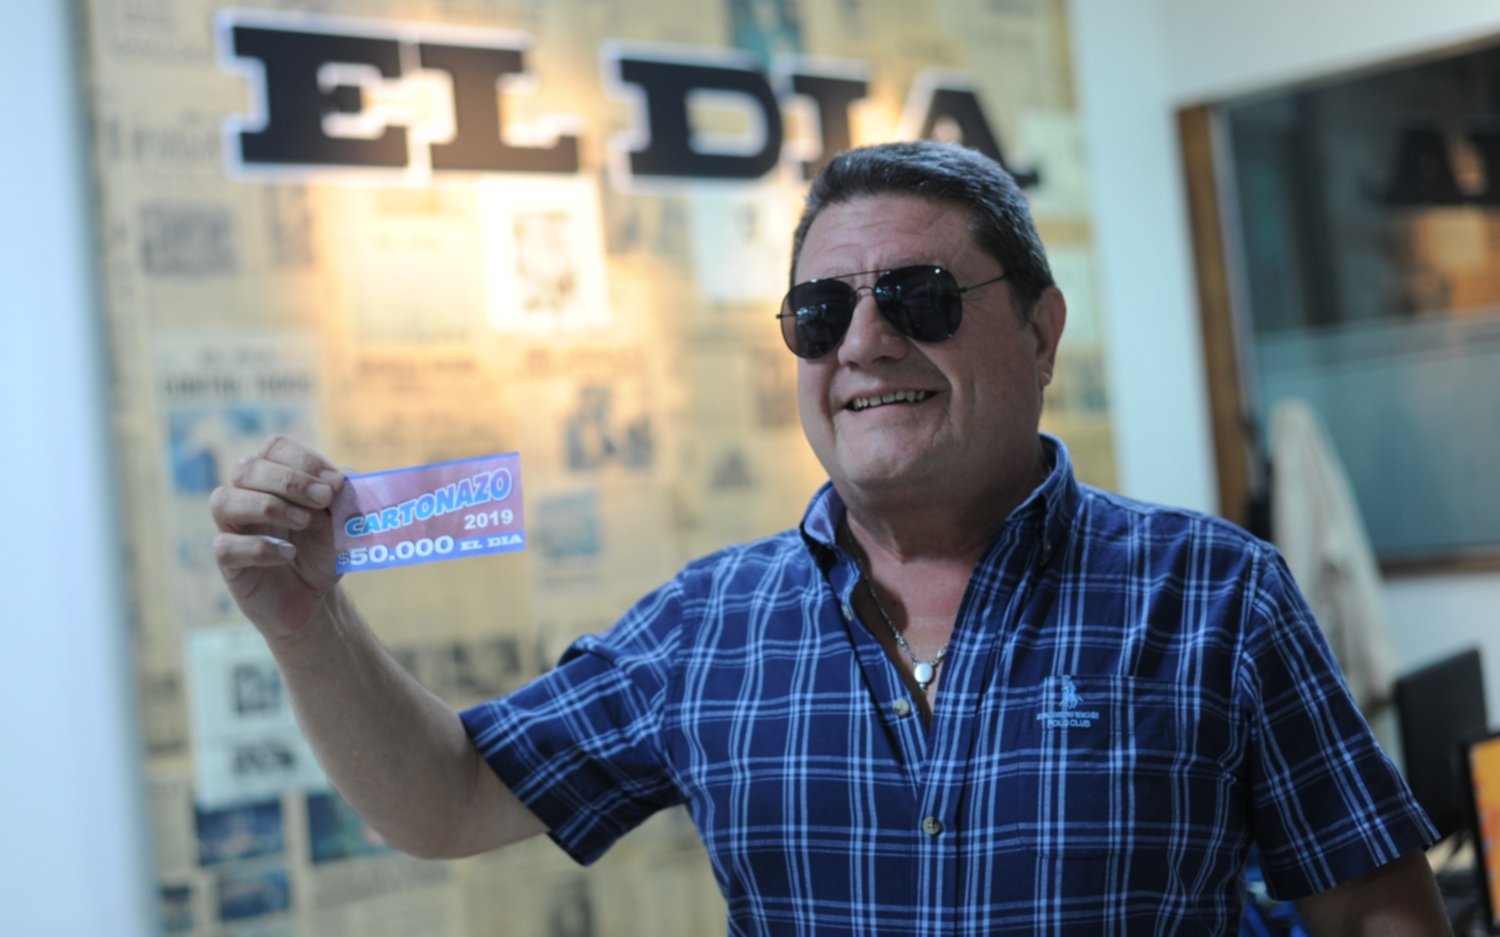 El cuarto de millón de pesos de El Cartonazo quedó en manos de un vecino de Ensenada